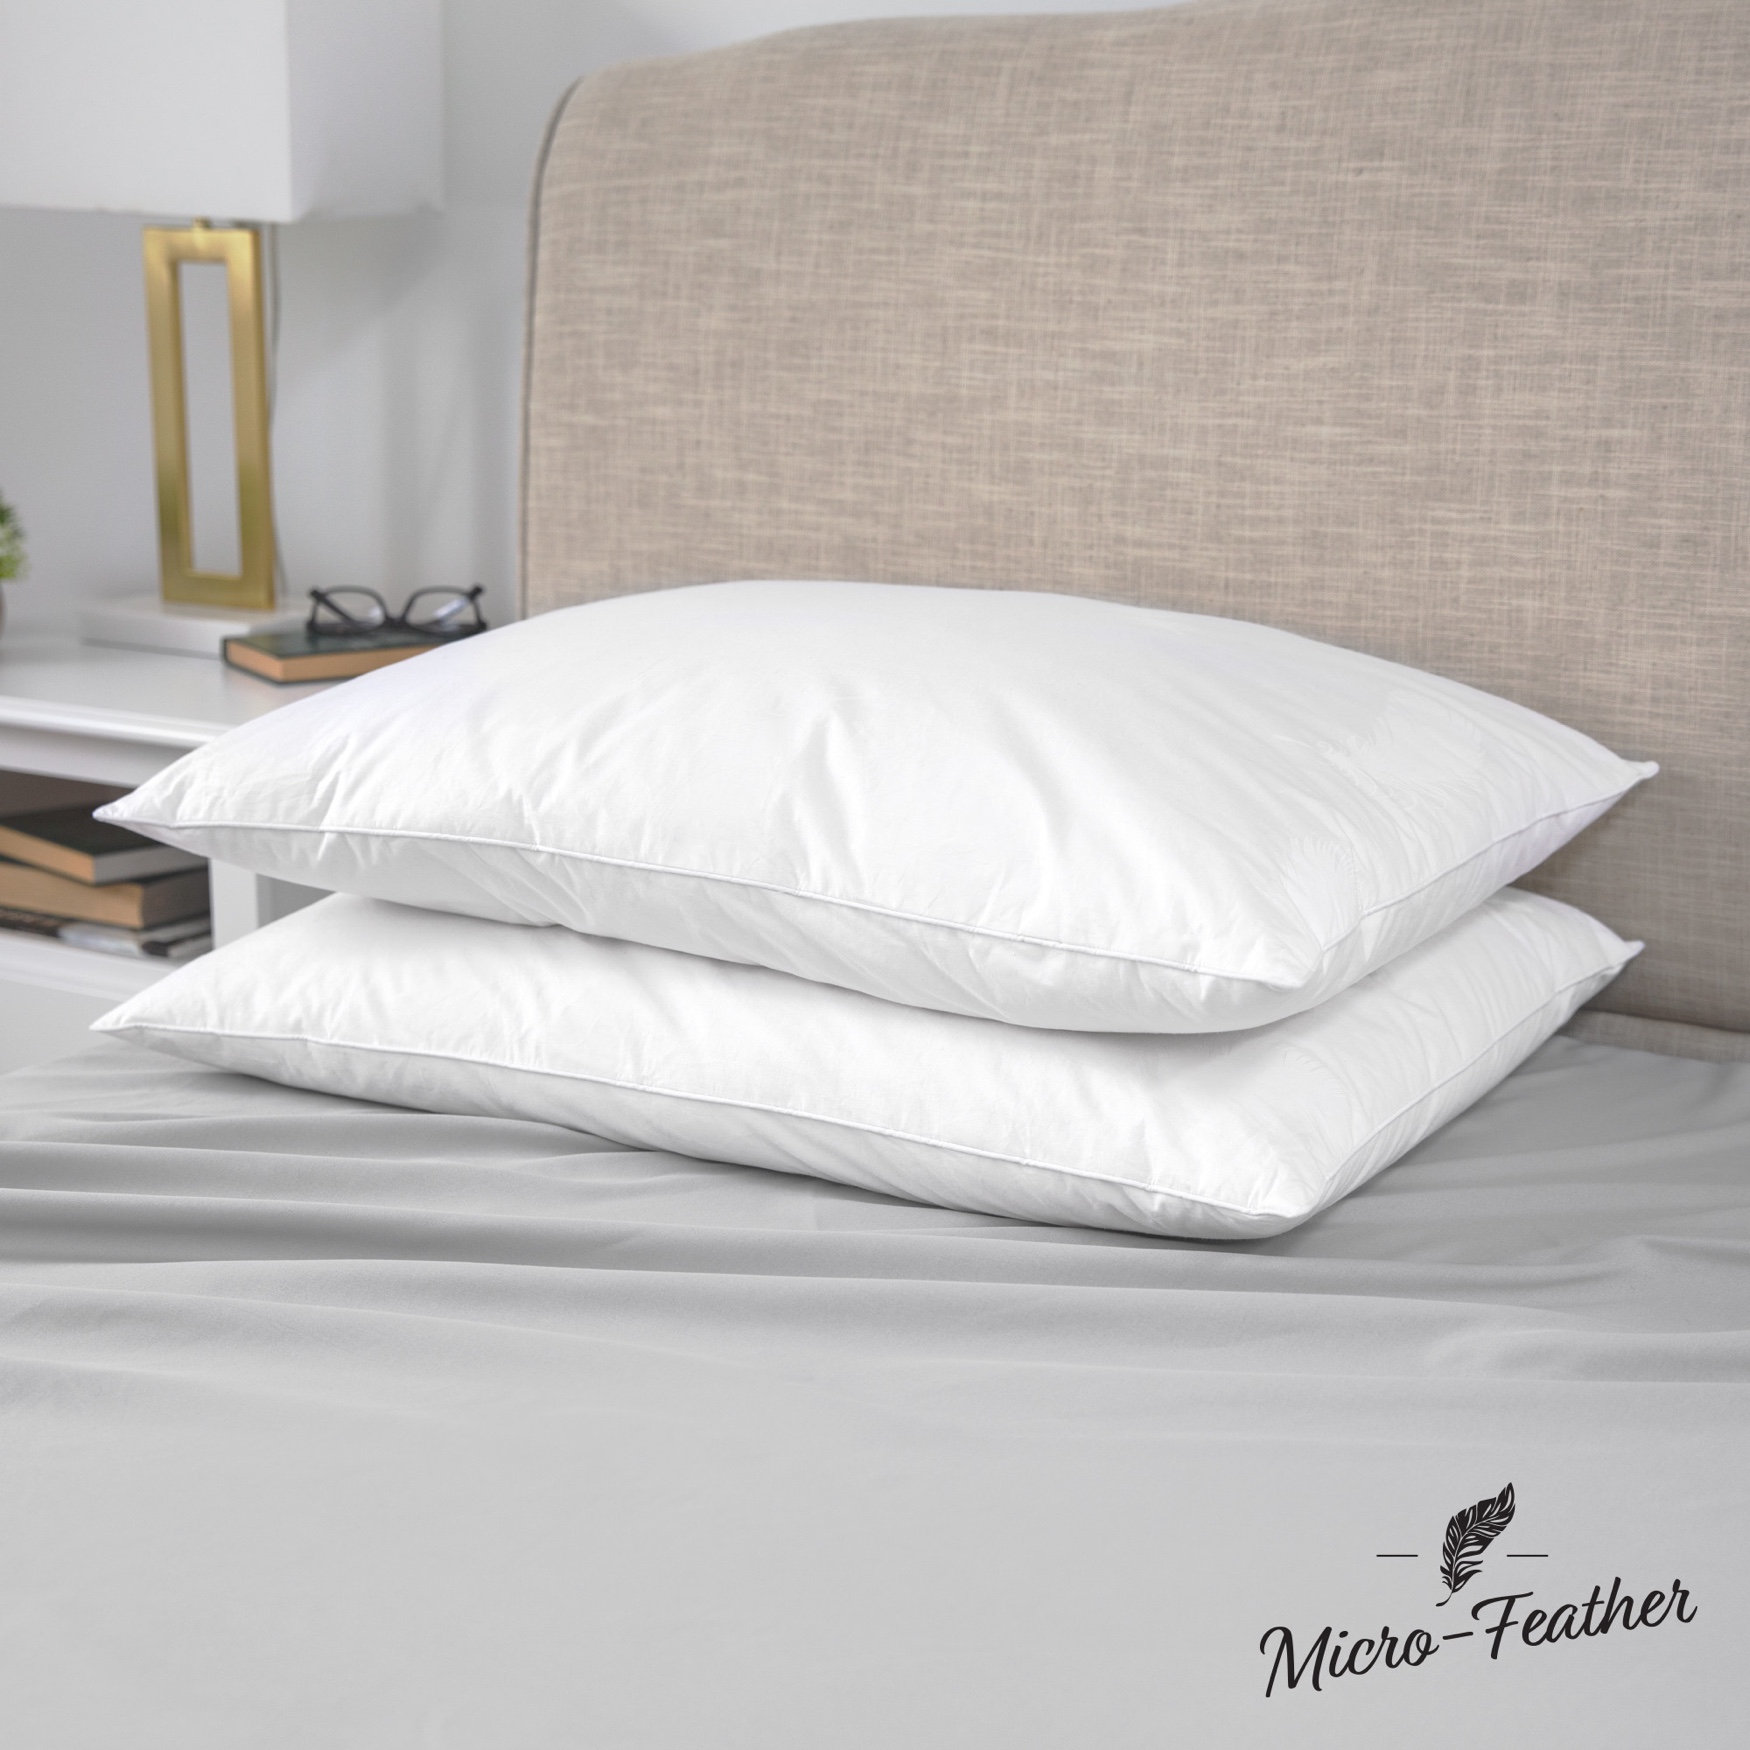 SensorPEDIC Micro-Feather Plush Pillows - 2 Pack, WHITE